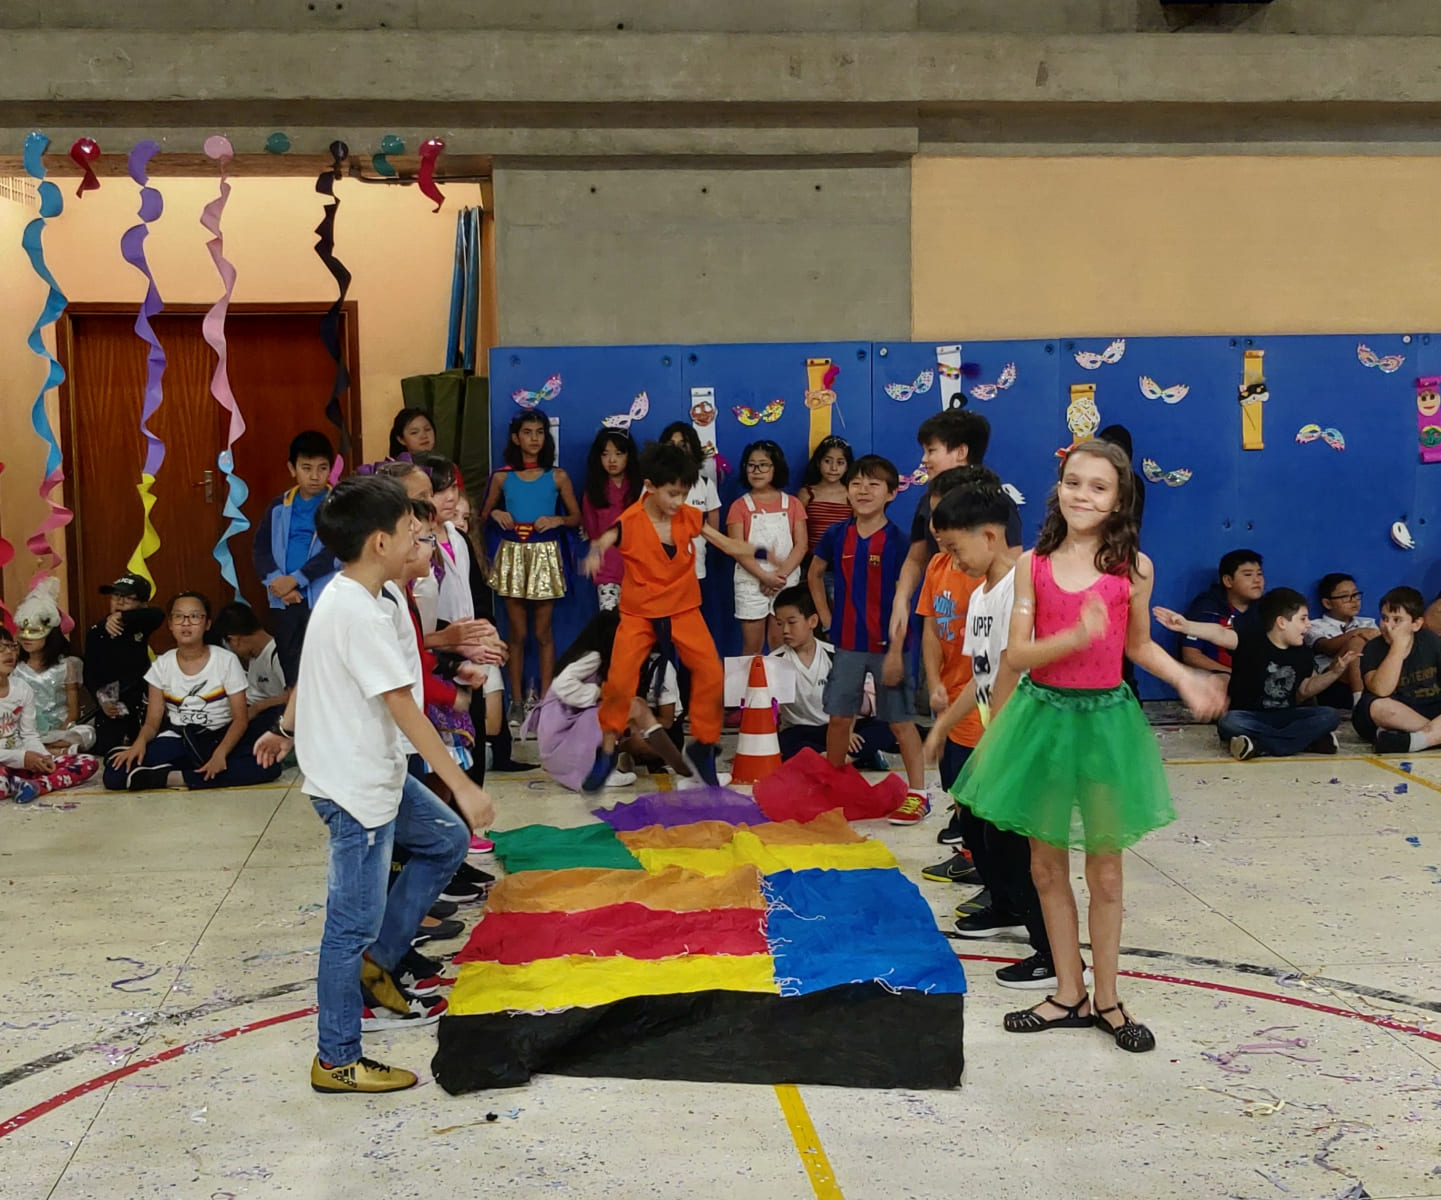 Alunos da Educação Infantil e do Ensino Fundamental I do Colégio Etapa brincaram no carnaval por meio de atividades artísticas e bailes animados.